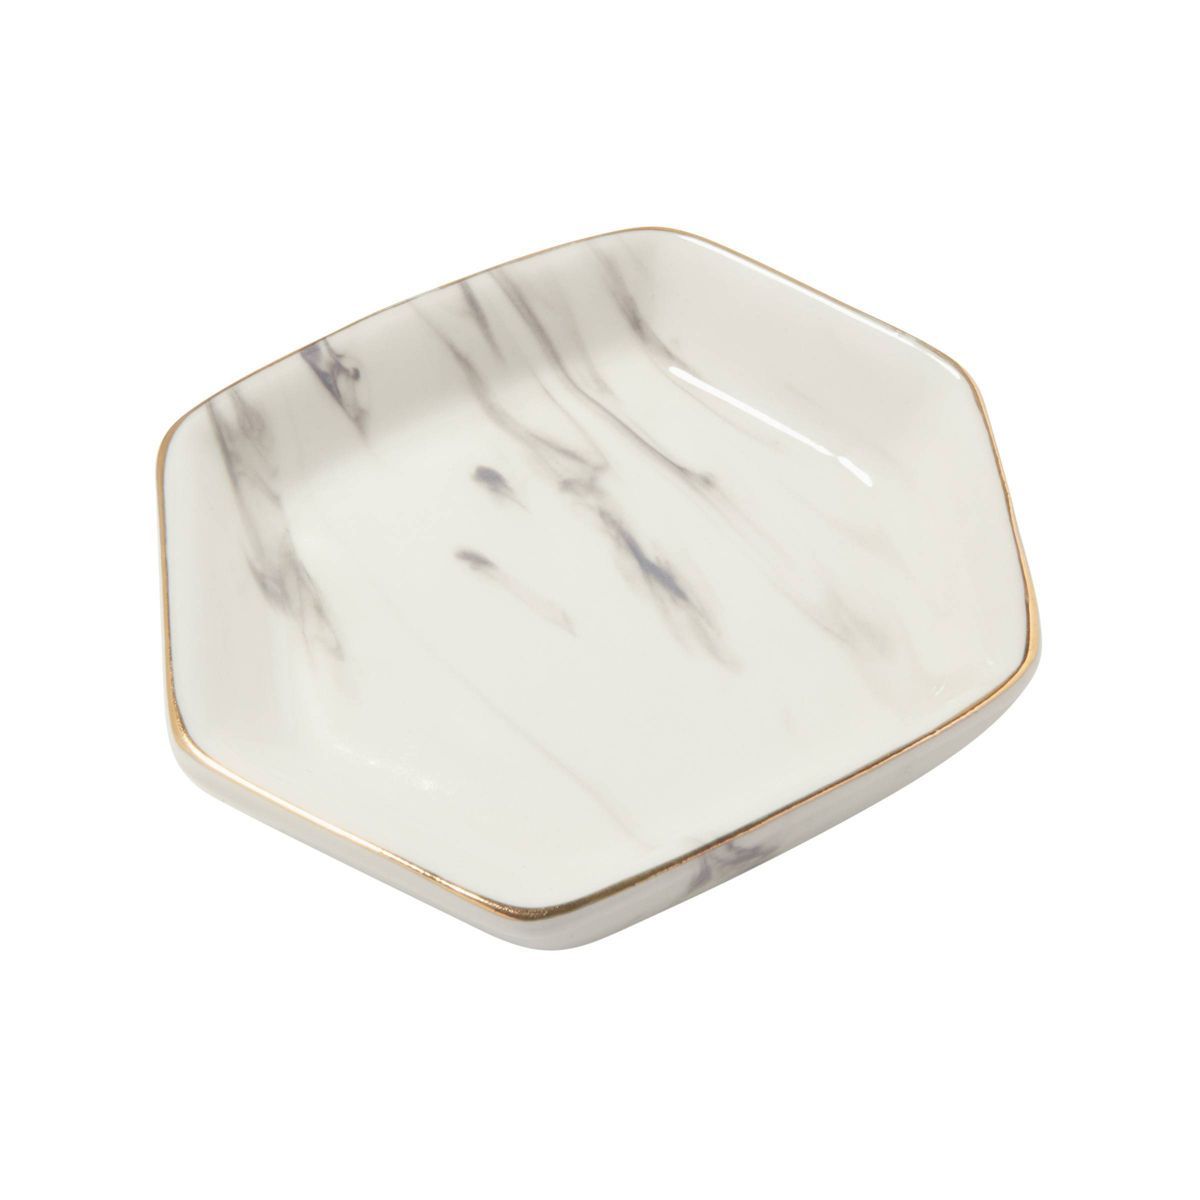 Kendra Scott Ceramic Liesel Ring Dish Jewelry Tray | Target